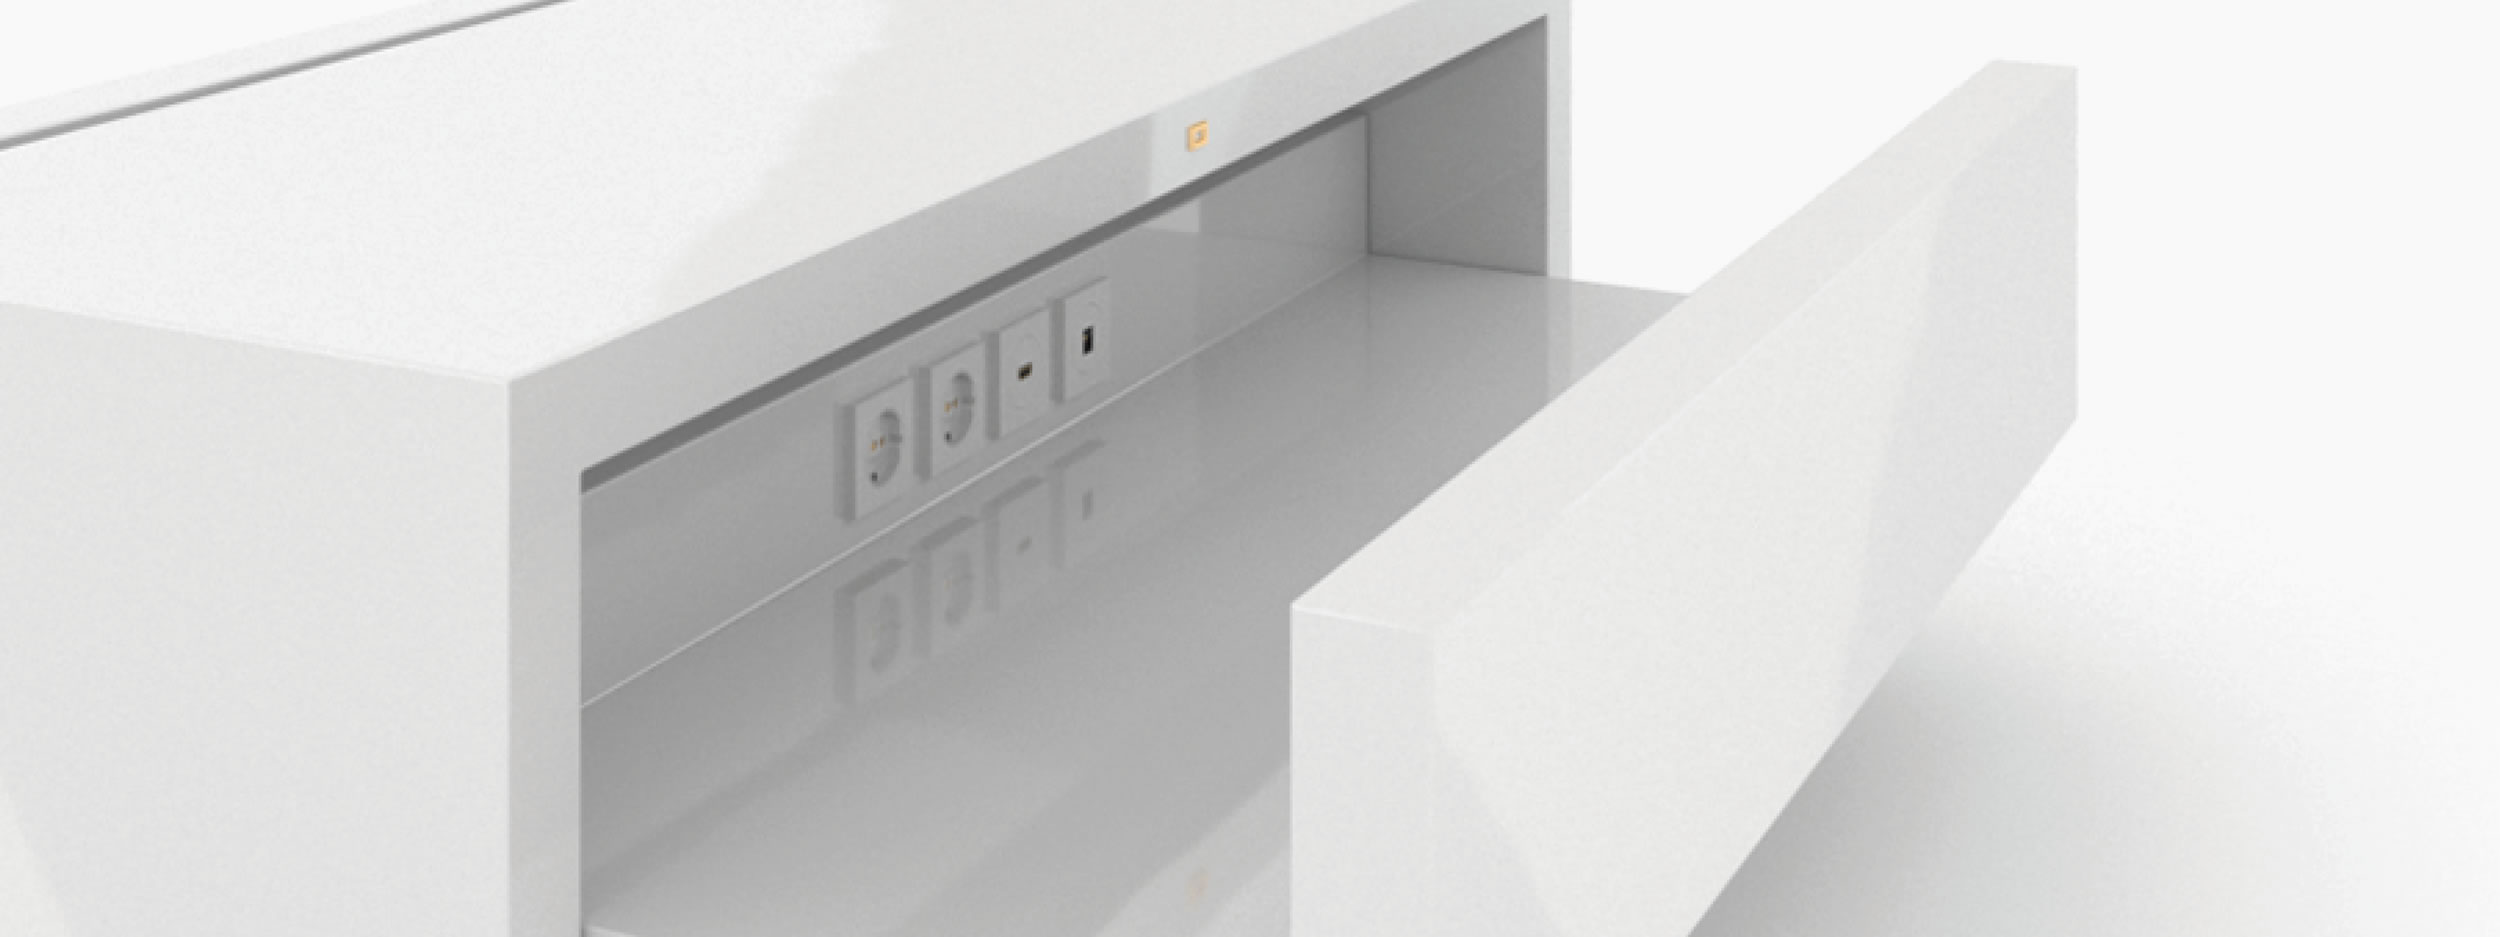 Sideboard quader weiss white furniture Buero bespokedesign Sideboards FS 50 FELIX SCHWAKE RECHTECK